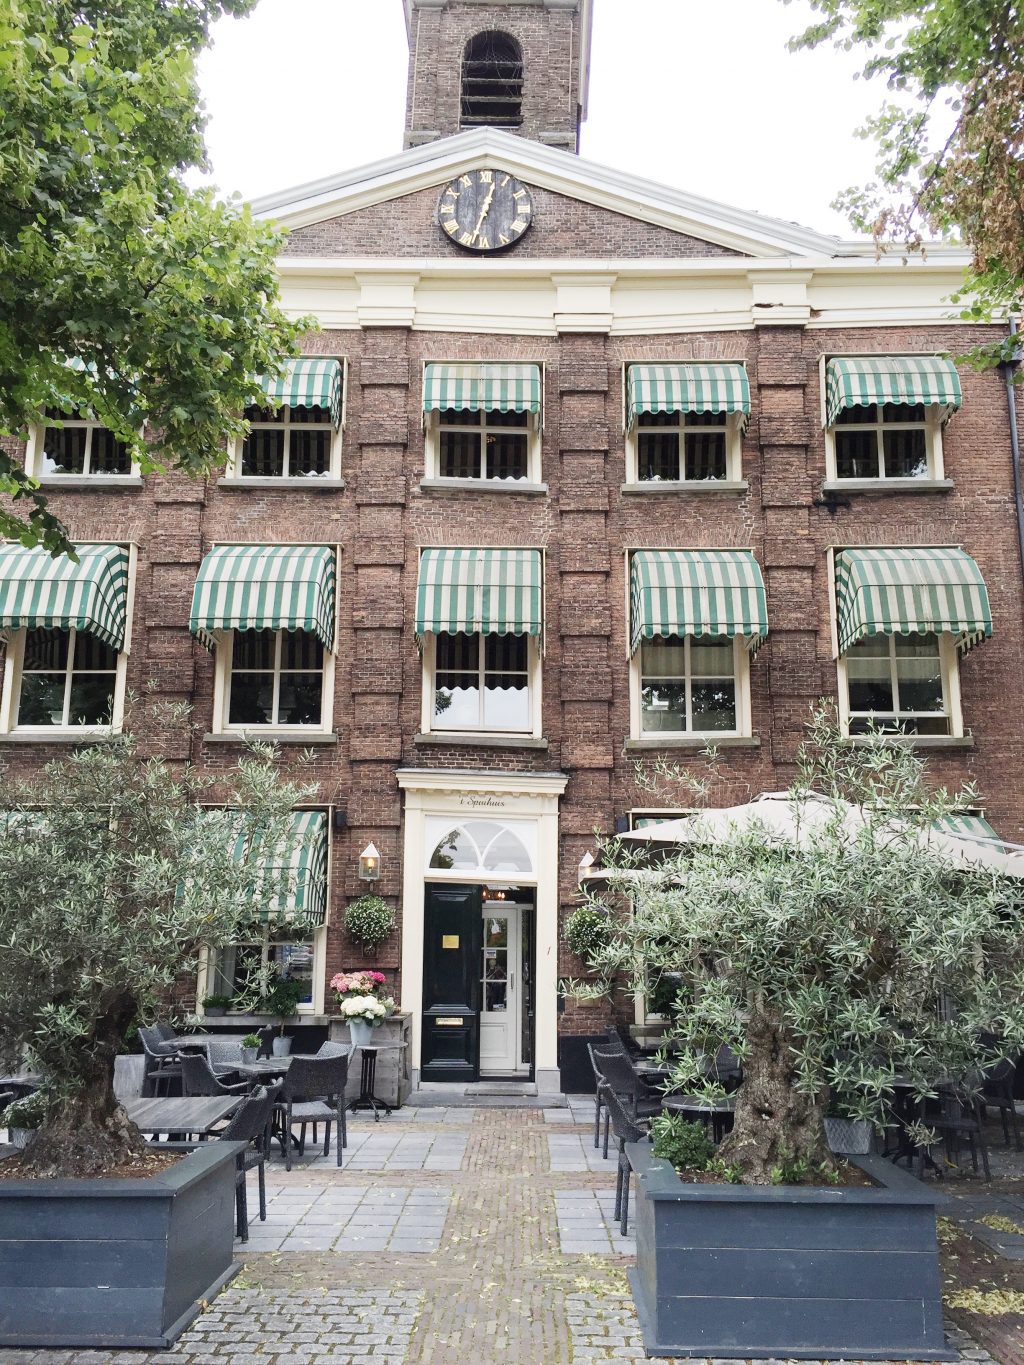 Restaurants Bergen op Zoom 10x de lekkerste hotspots made by ellen